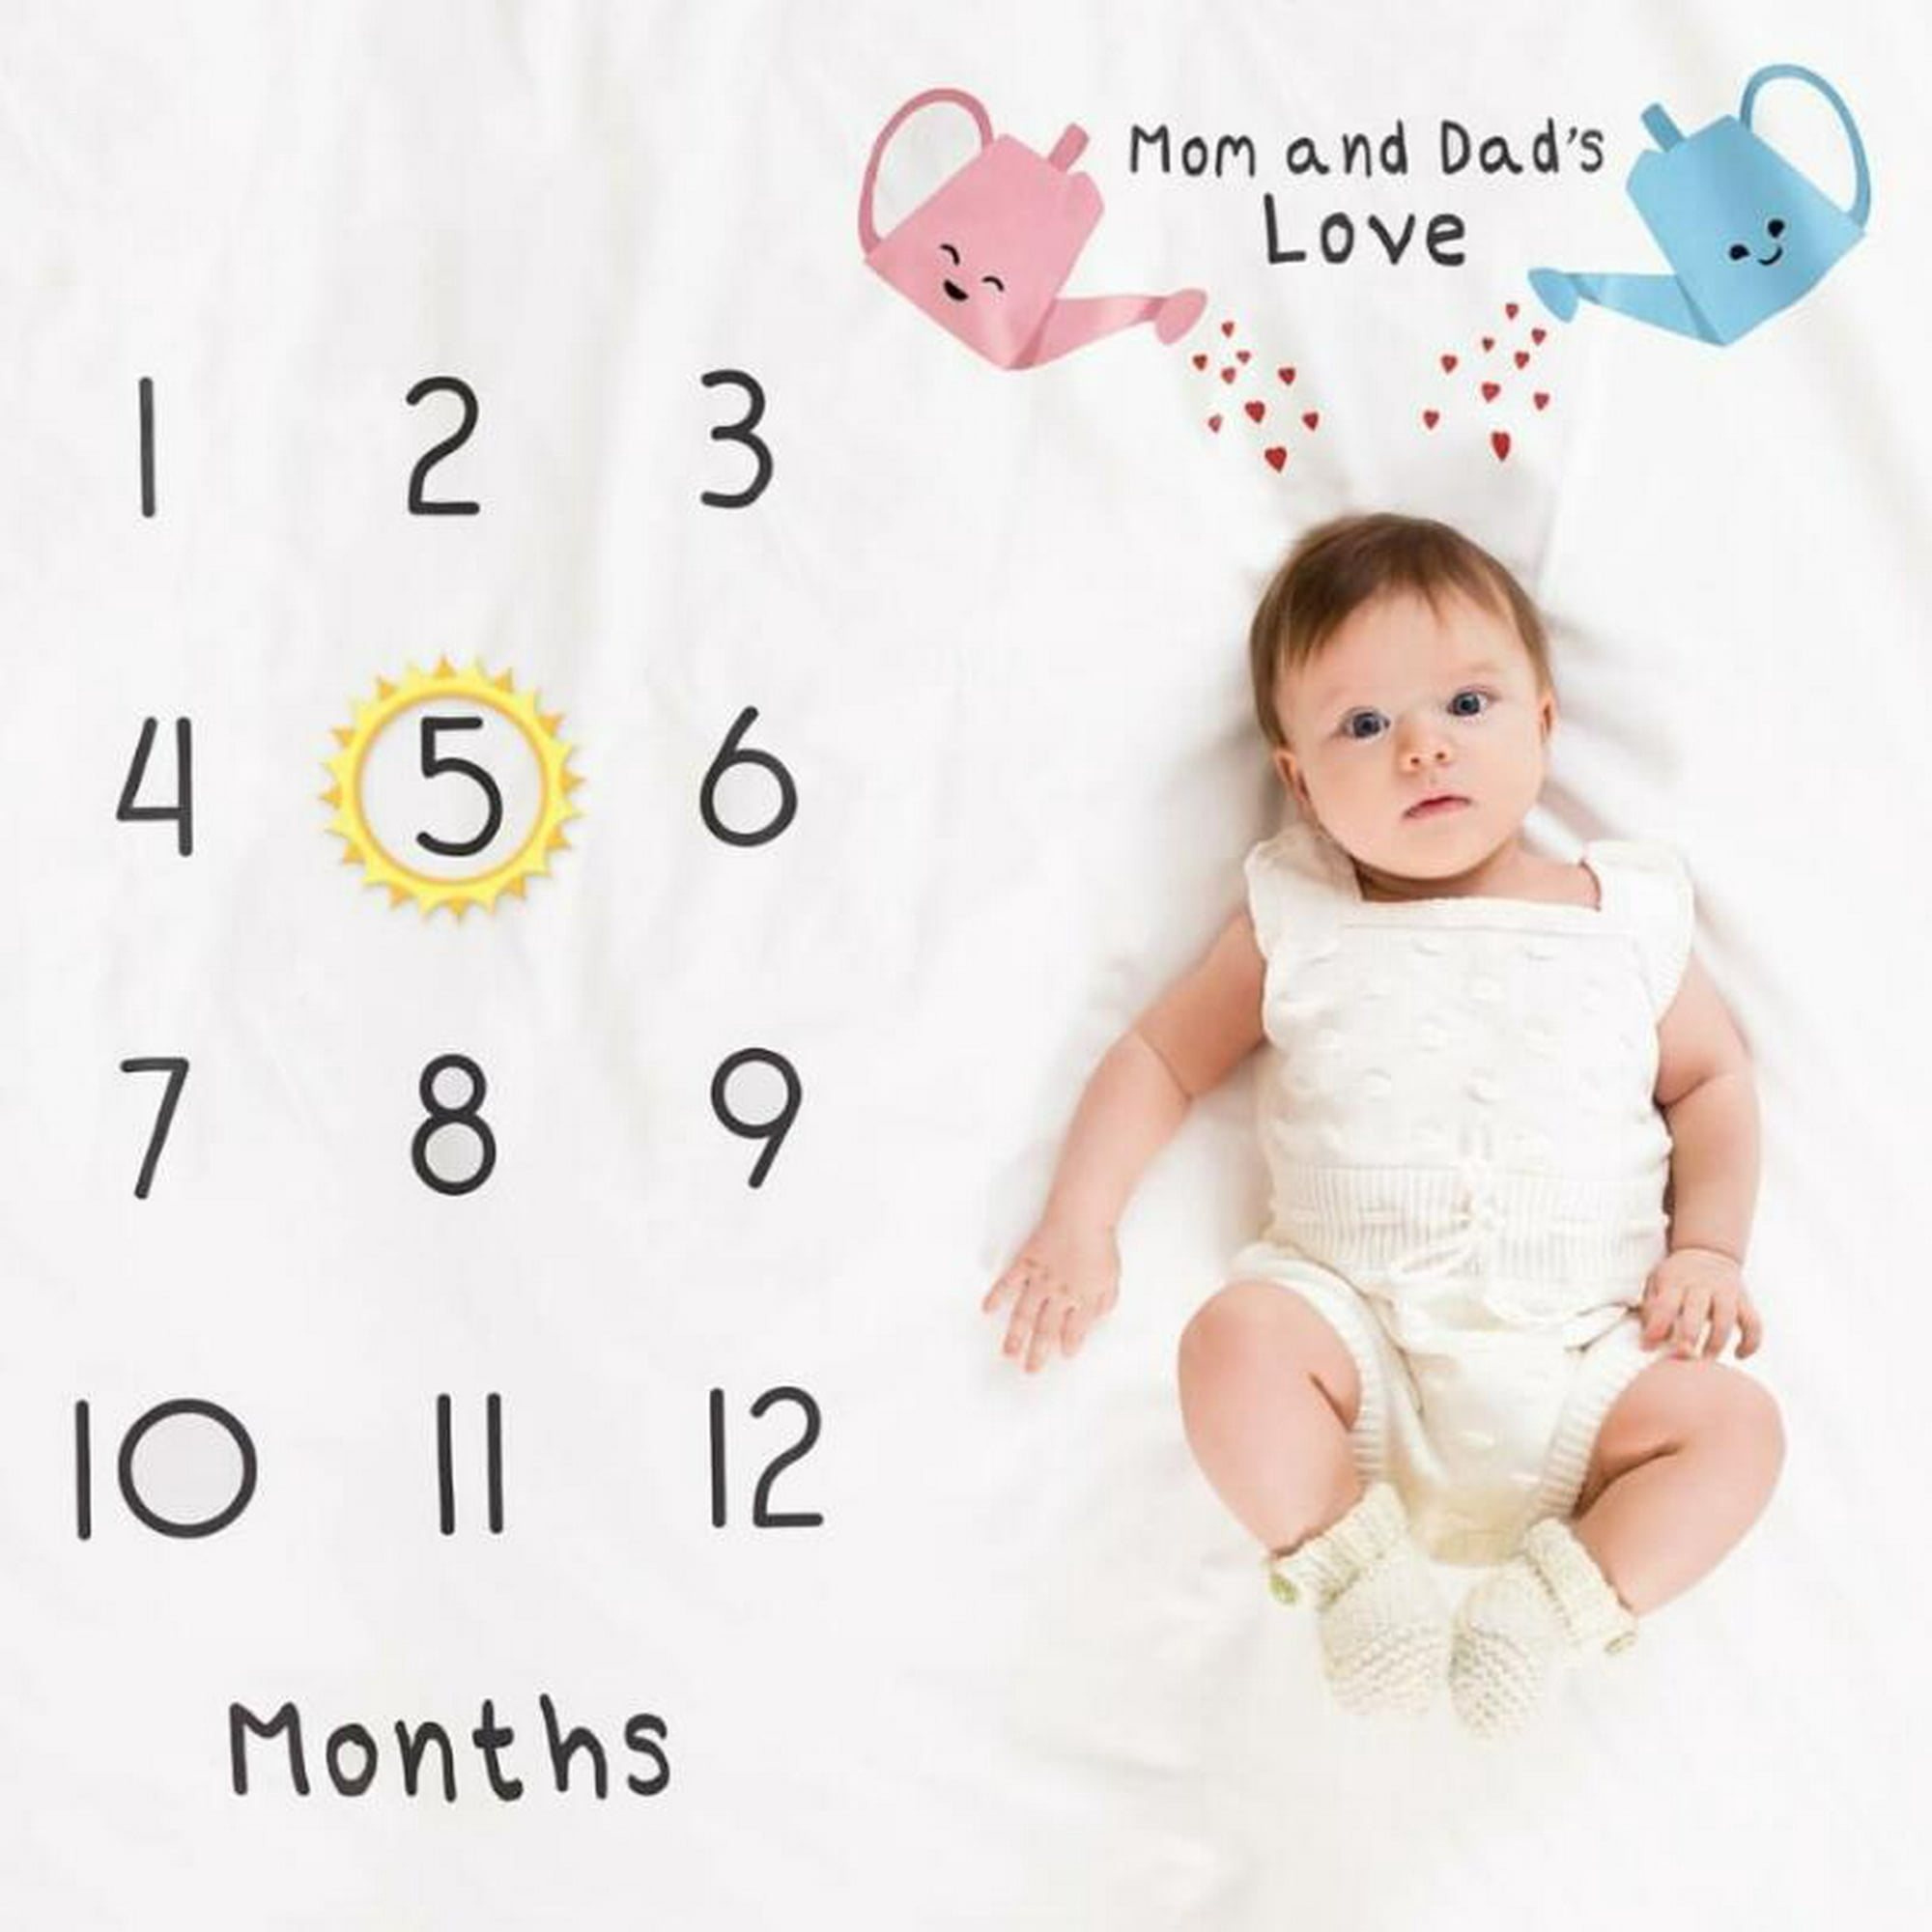 Manta para bebé Mamas Love 1-12 meses para fotografía